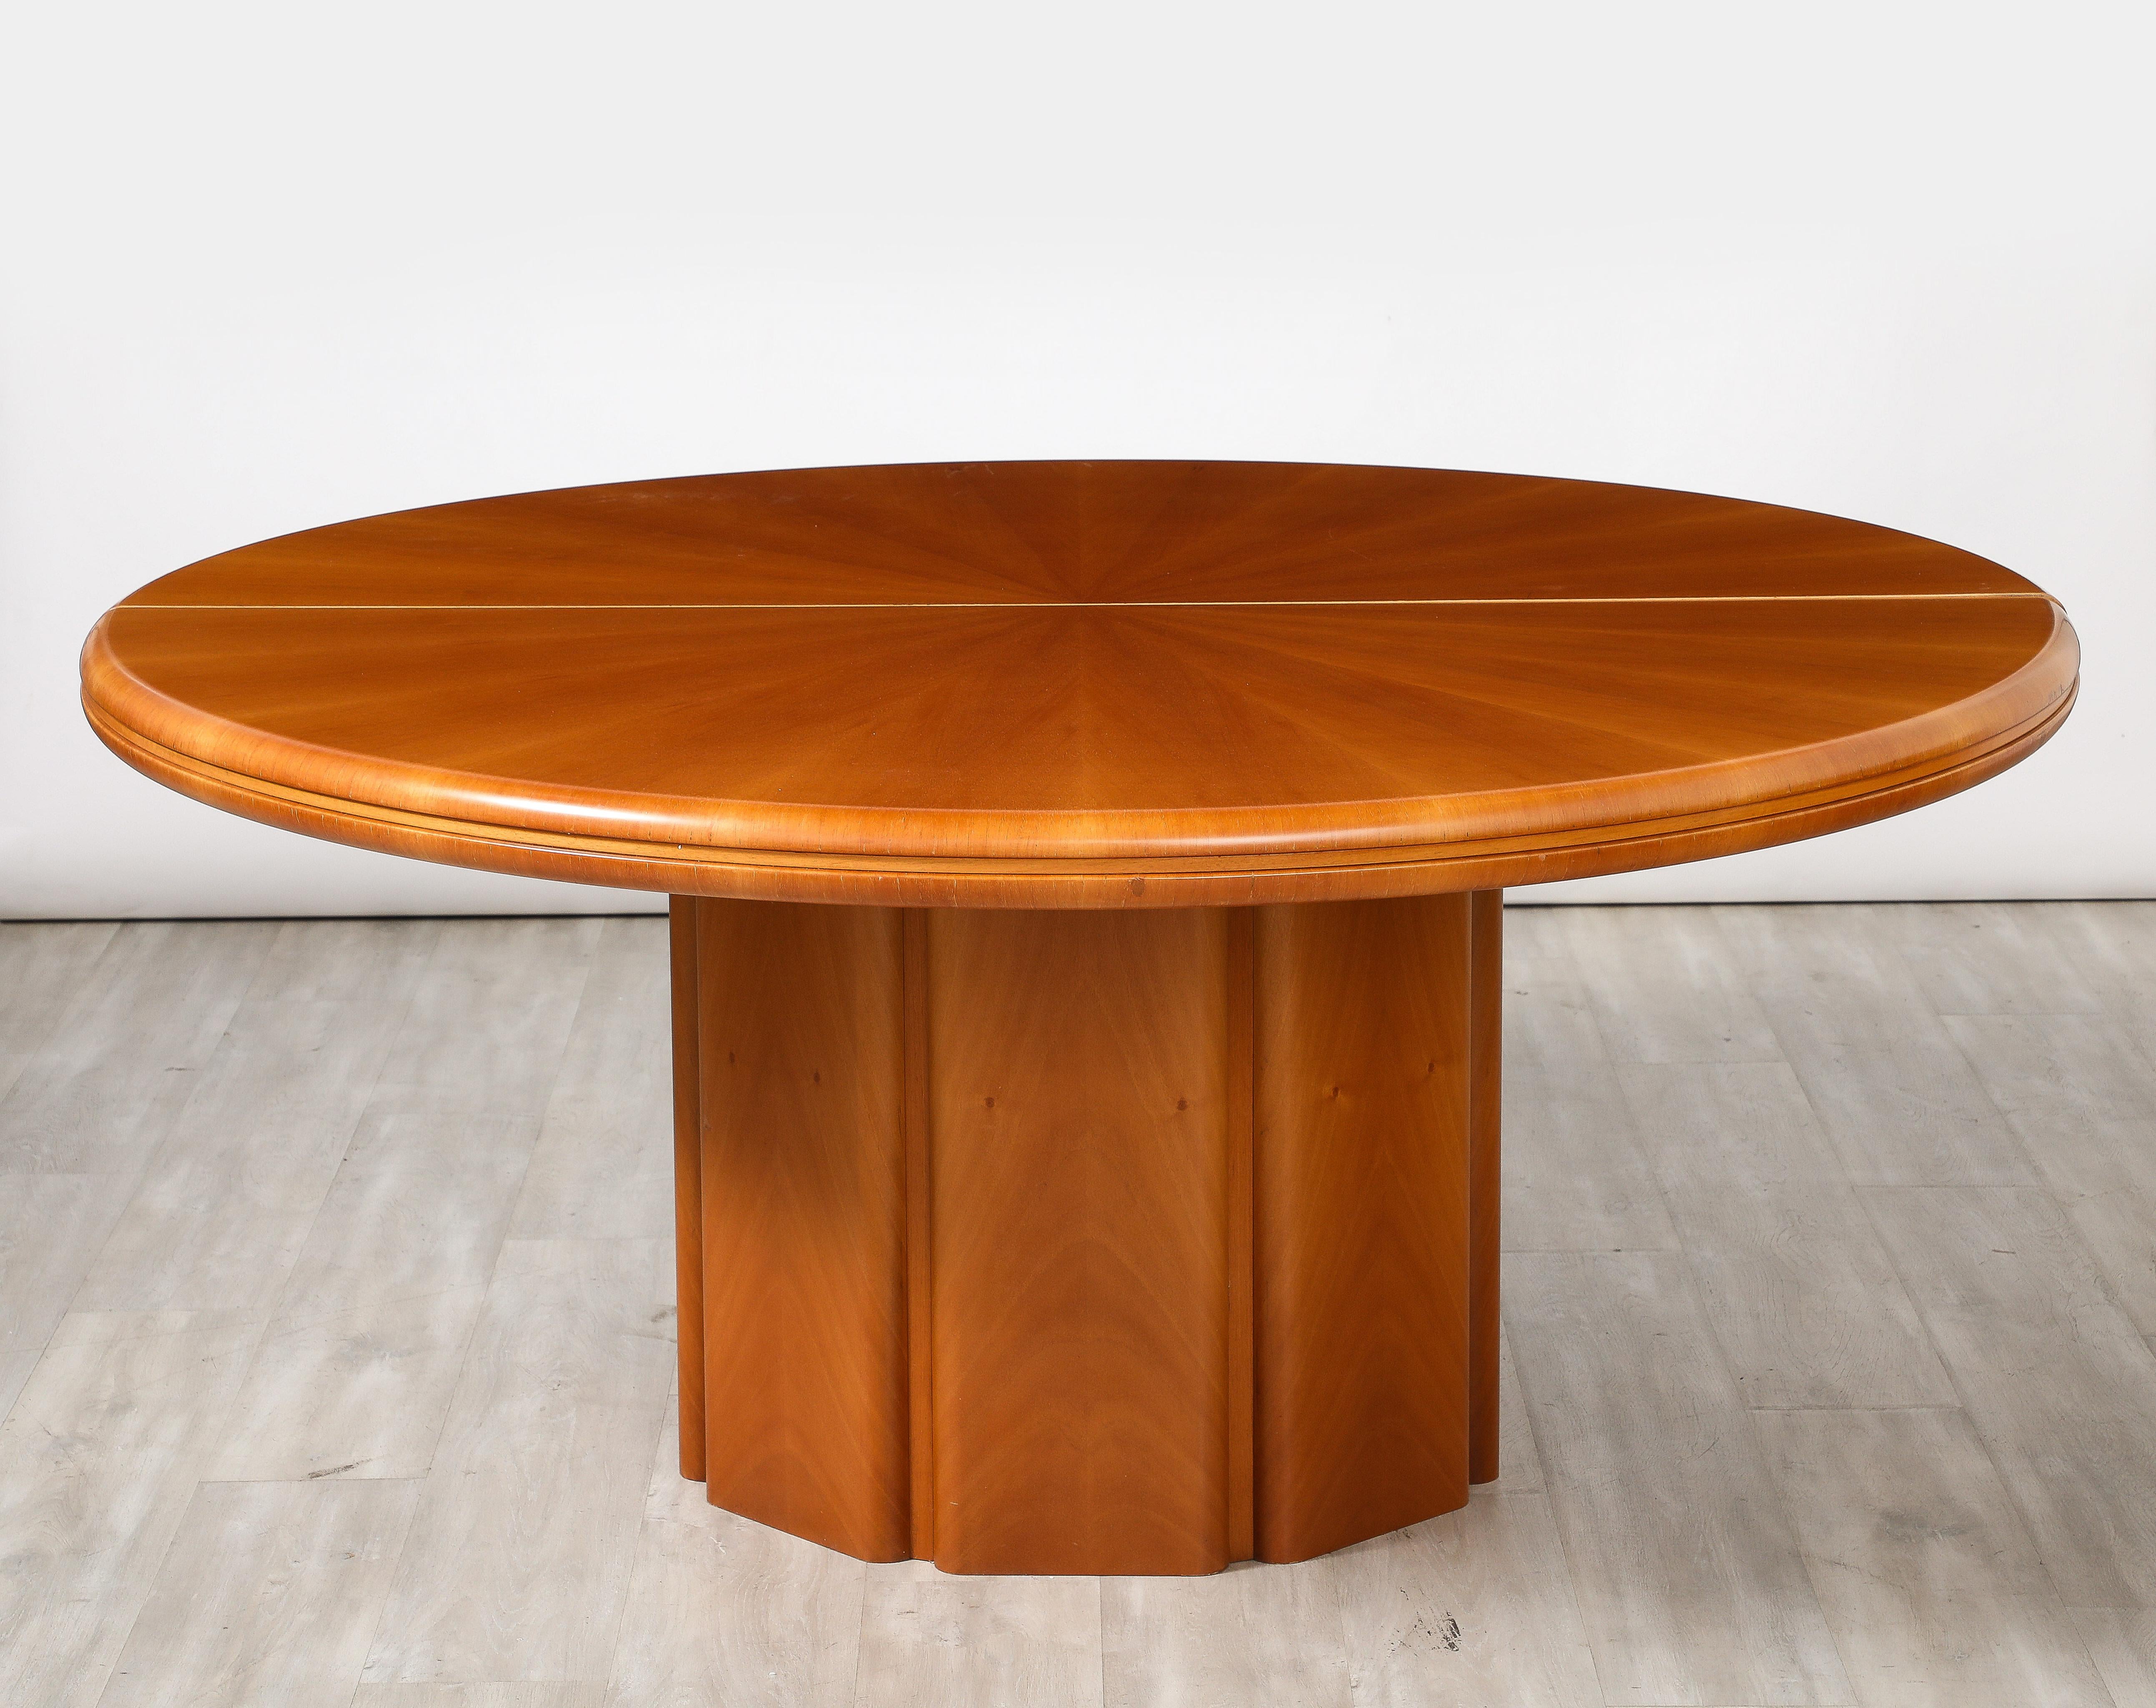 Ein italienischer modernistischer Ess- oder Mittelsockeltisch aus Ahornholz.  Die Tischplatte hat ein schönes Sonnenschliffmuster, der Sockel ist mit einem Facettenmuster versehen.  Mit seinen dramatischen Ausmaßen kann er als Mitteltisch oder